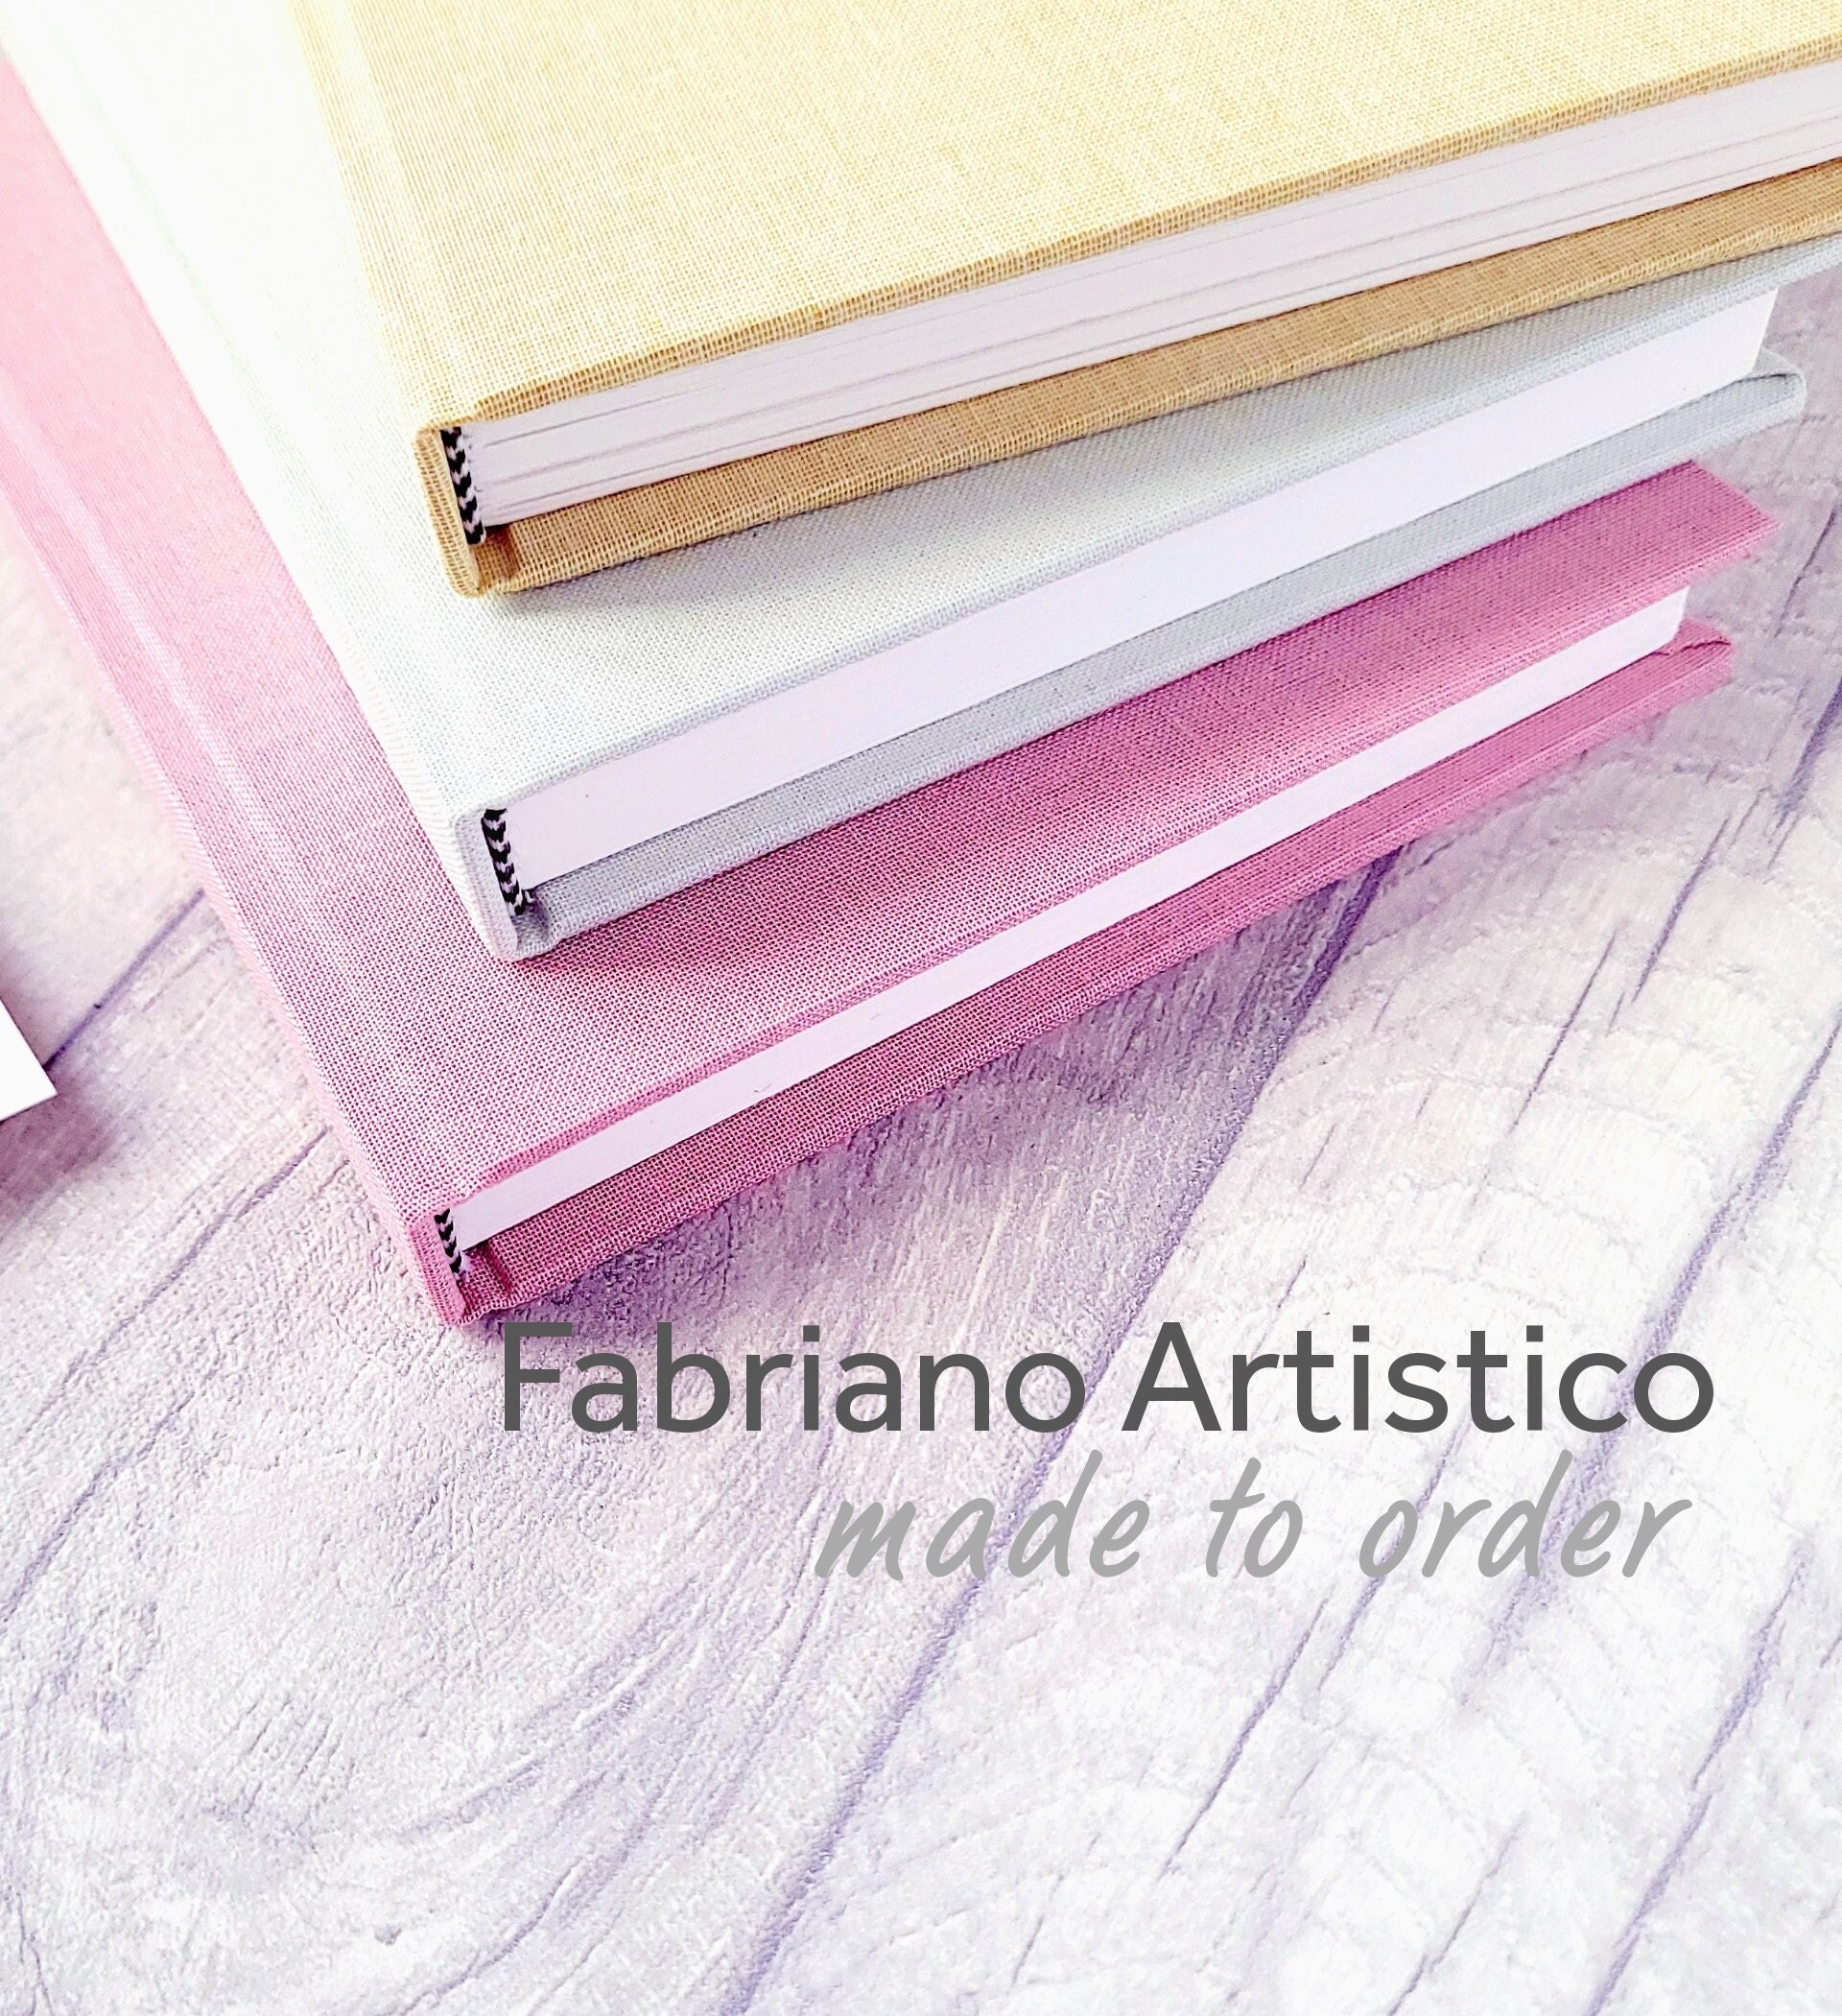 Fabriano Artistico 140lb Soft Press, 22 x 30